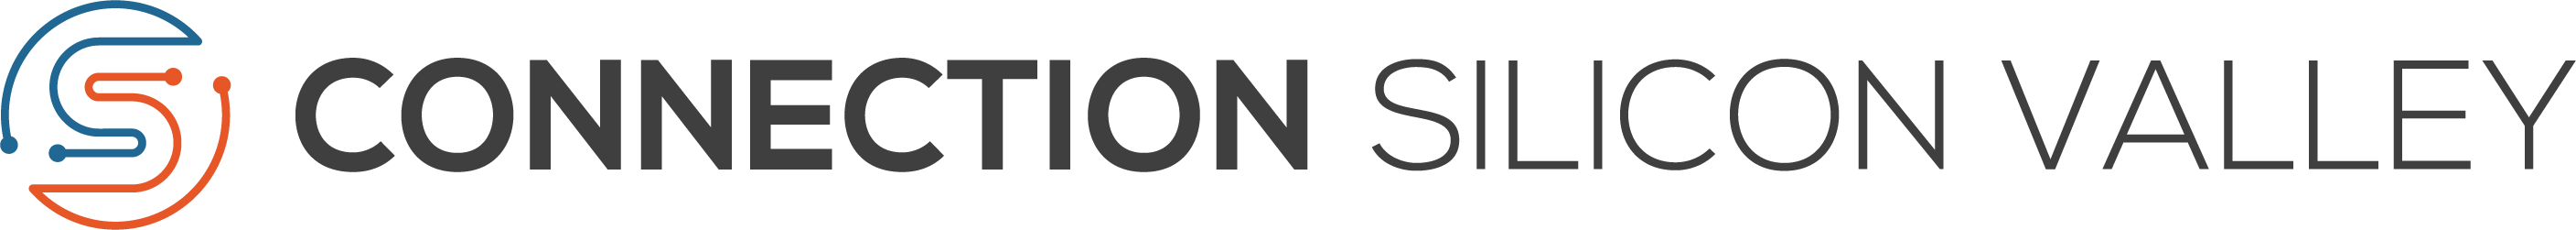 CSV logo long color-1